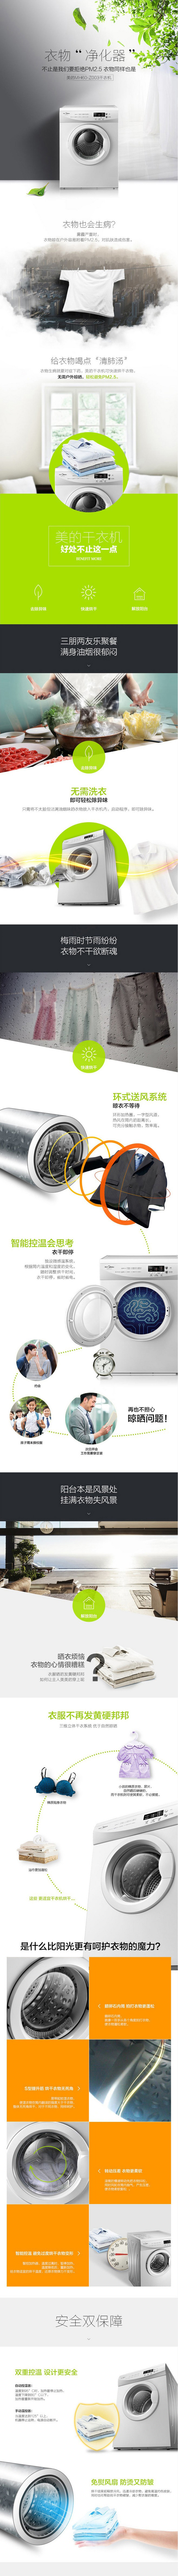 淘宝美工两米八的CC美的MH60-Z003干衣机作品